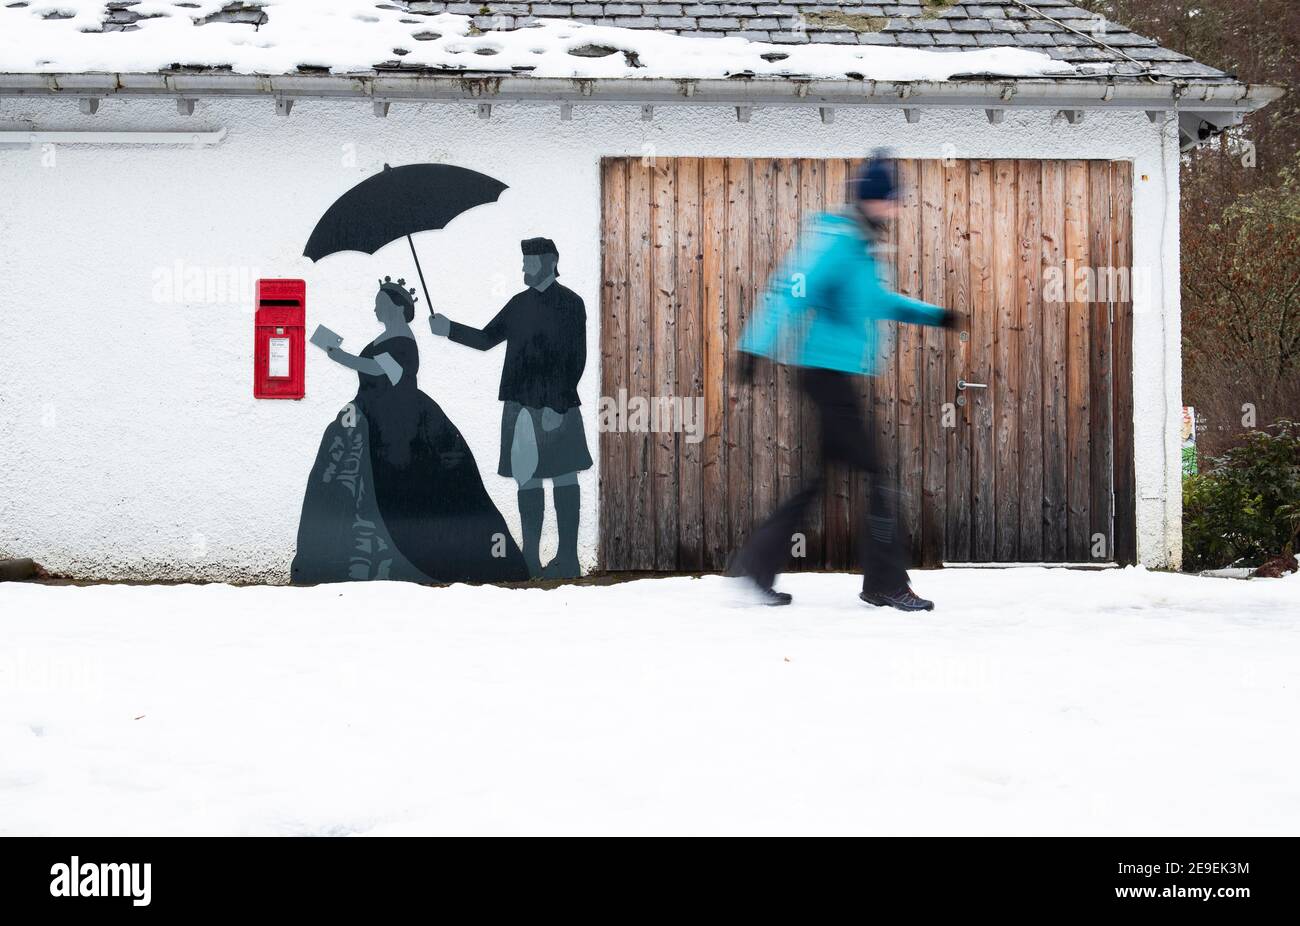 Schnee umgibt den Briefkasten von Queen's View, der die Silhouette von Queen Victoria und ihrem schottischen Diener John Brown an der Wand neben Pitlochry in Perthshire zeigt. Bilddatum: Donnerstag, 4. Februar 2021. Stockfoto